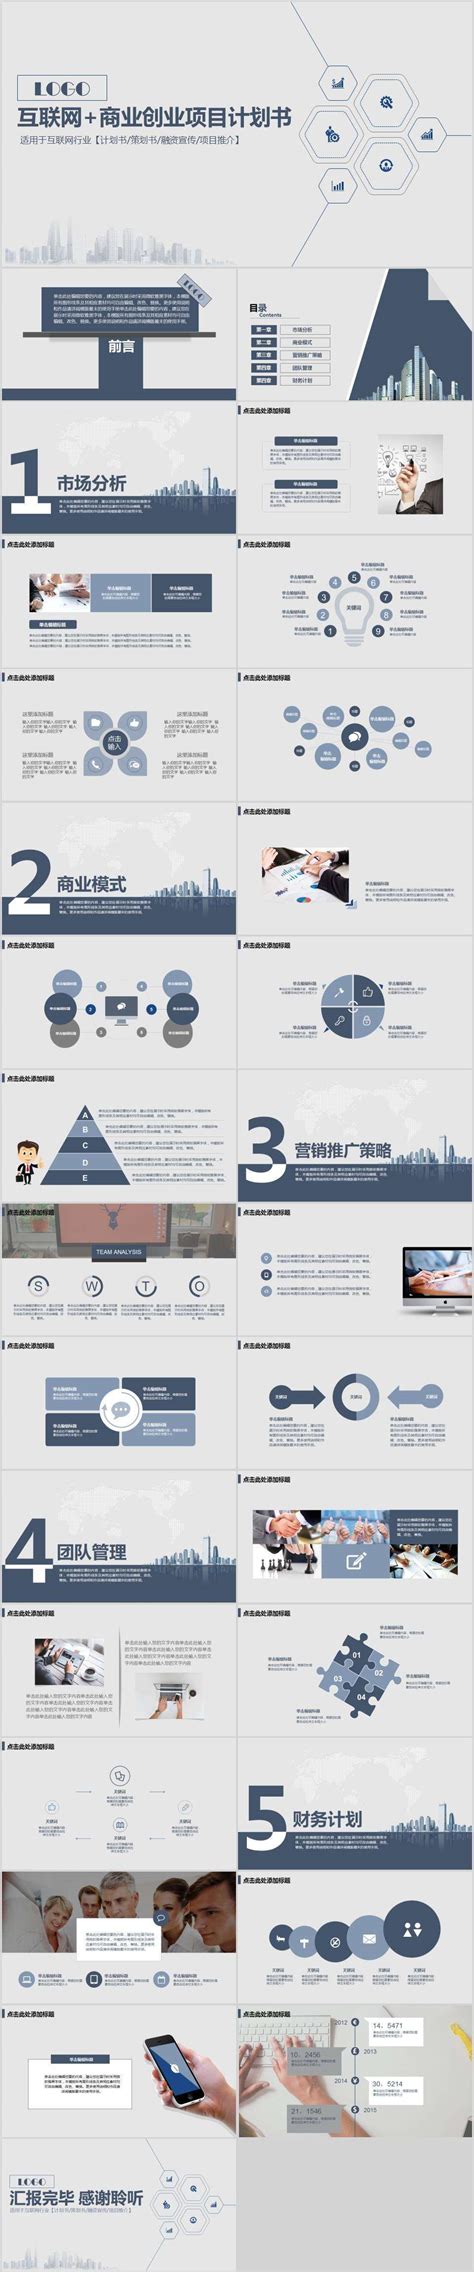 互联网商业创业项目计划书-PPT模板-图创网